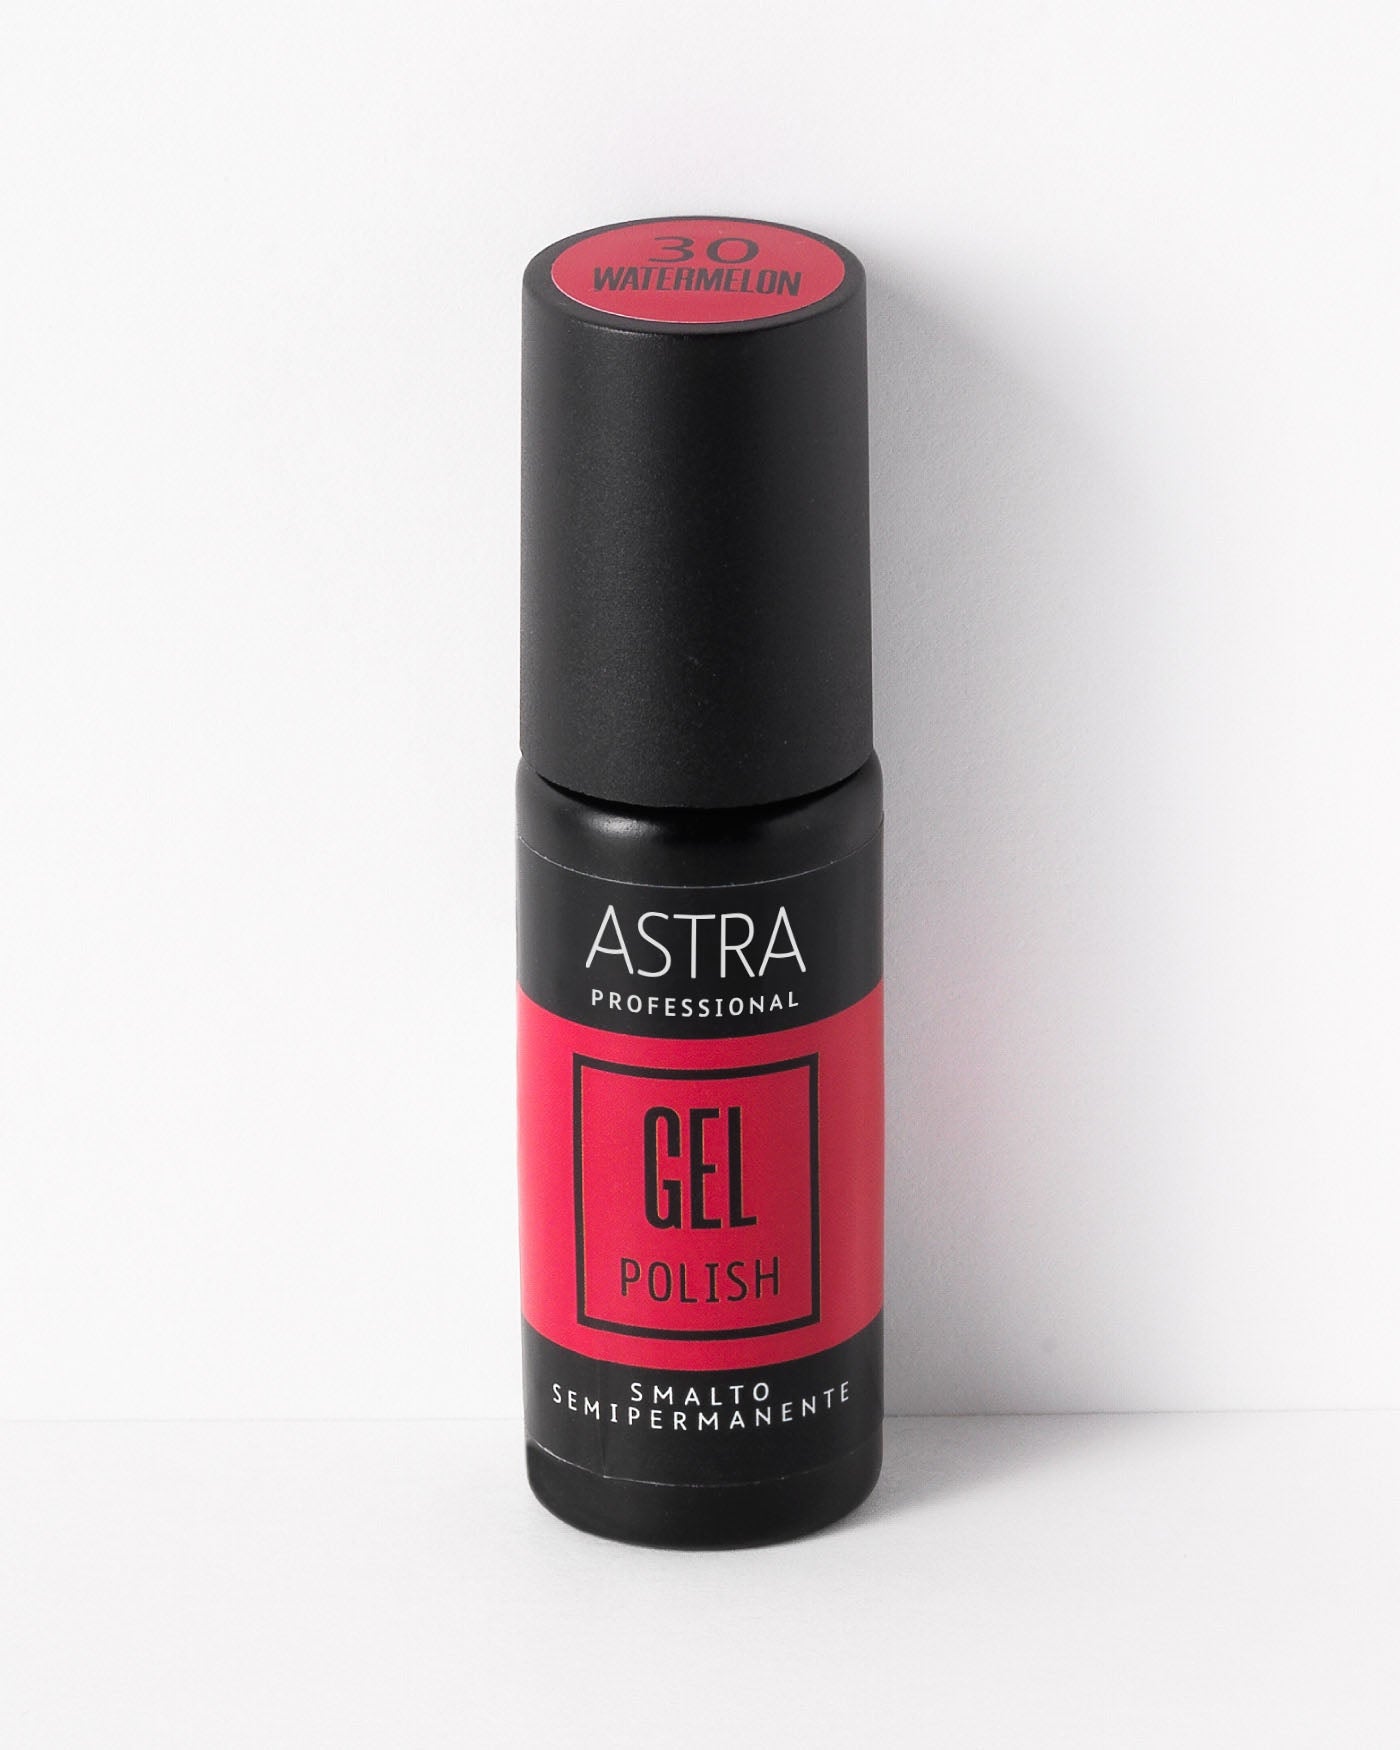 PROFESSIONAL GEL POLISH - Smalto Semipermanente - 30 - Watermelon - Astra Make-Up